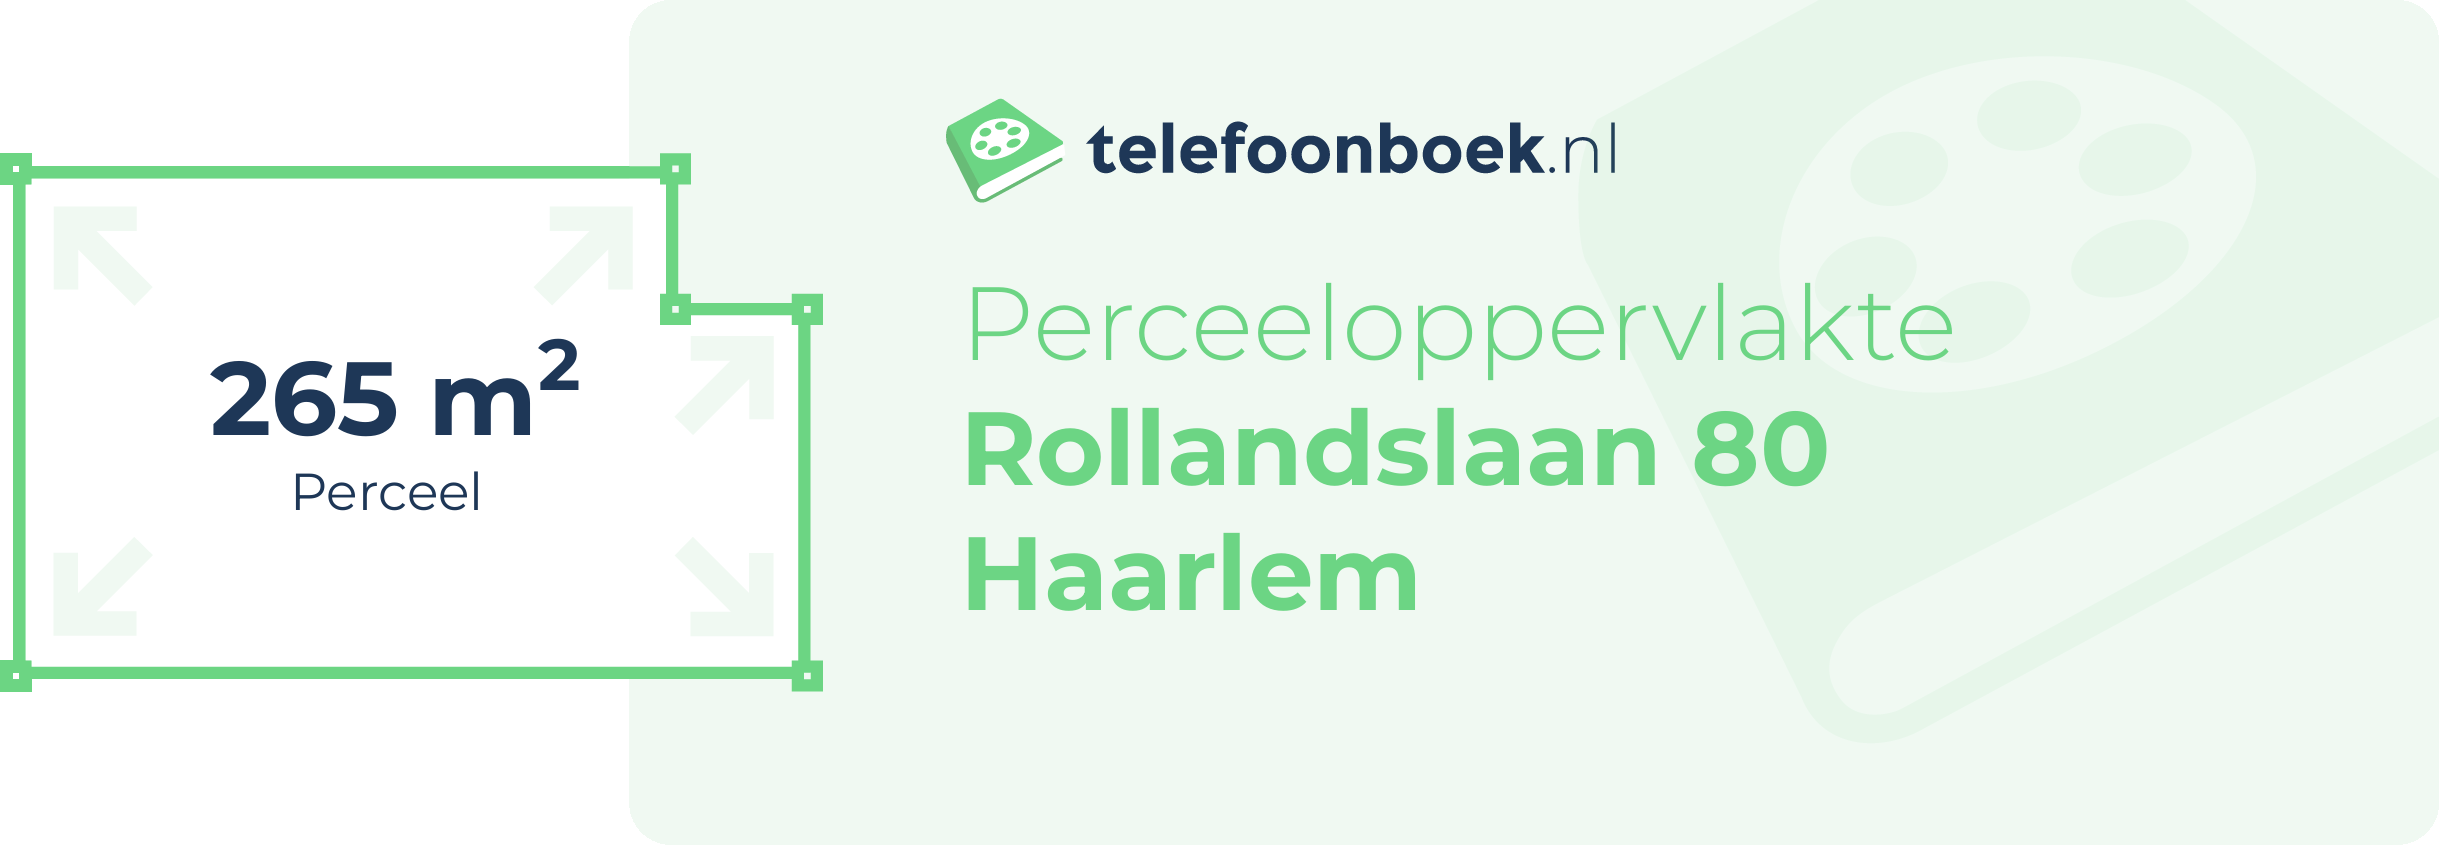 Perceeloppervlakte Rollandslaan 80 Haarlem